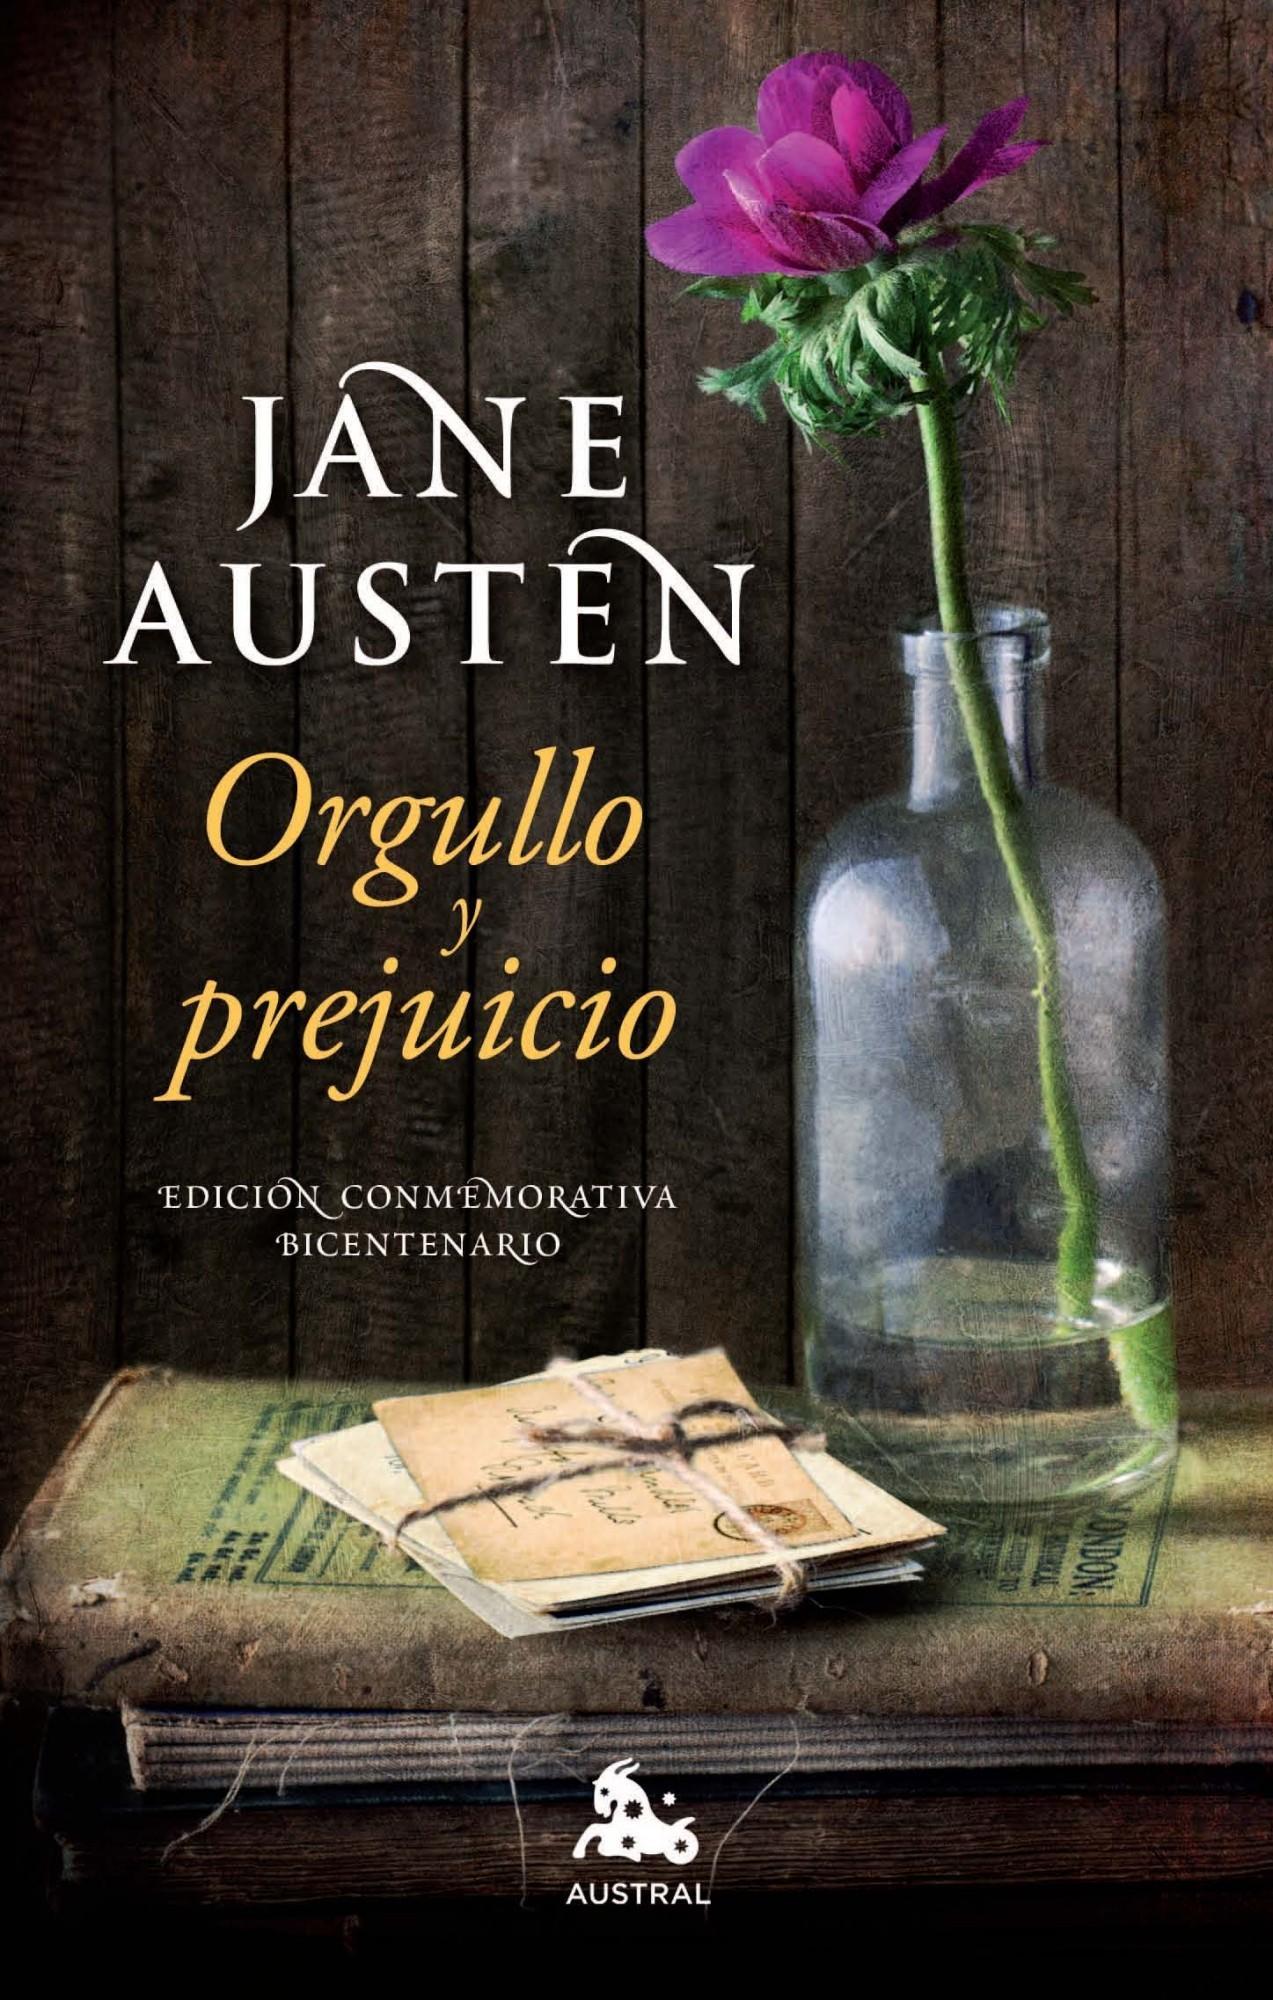 El libro que recomendamos esta semana, Orgullo y prejuicio, por Jane Austen